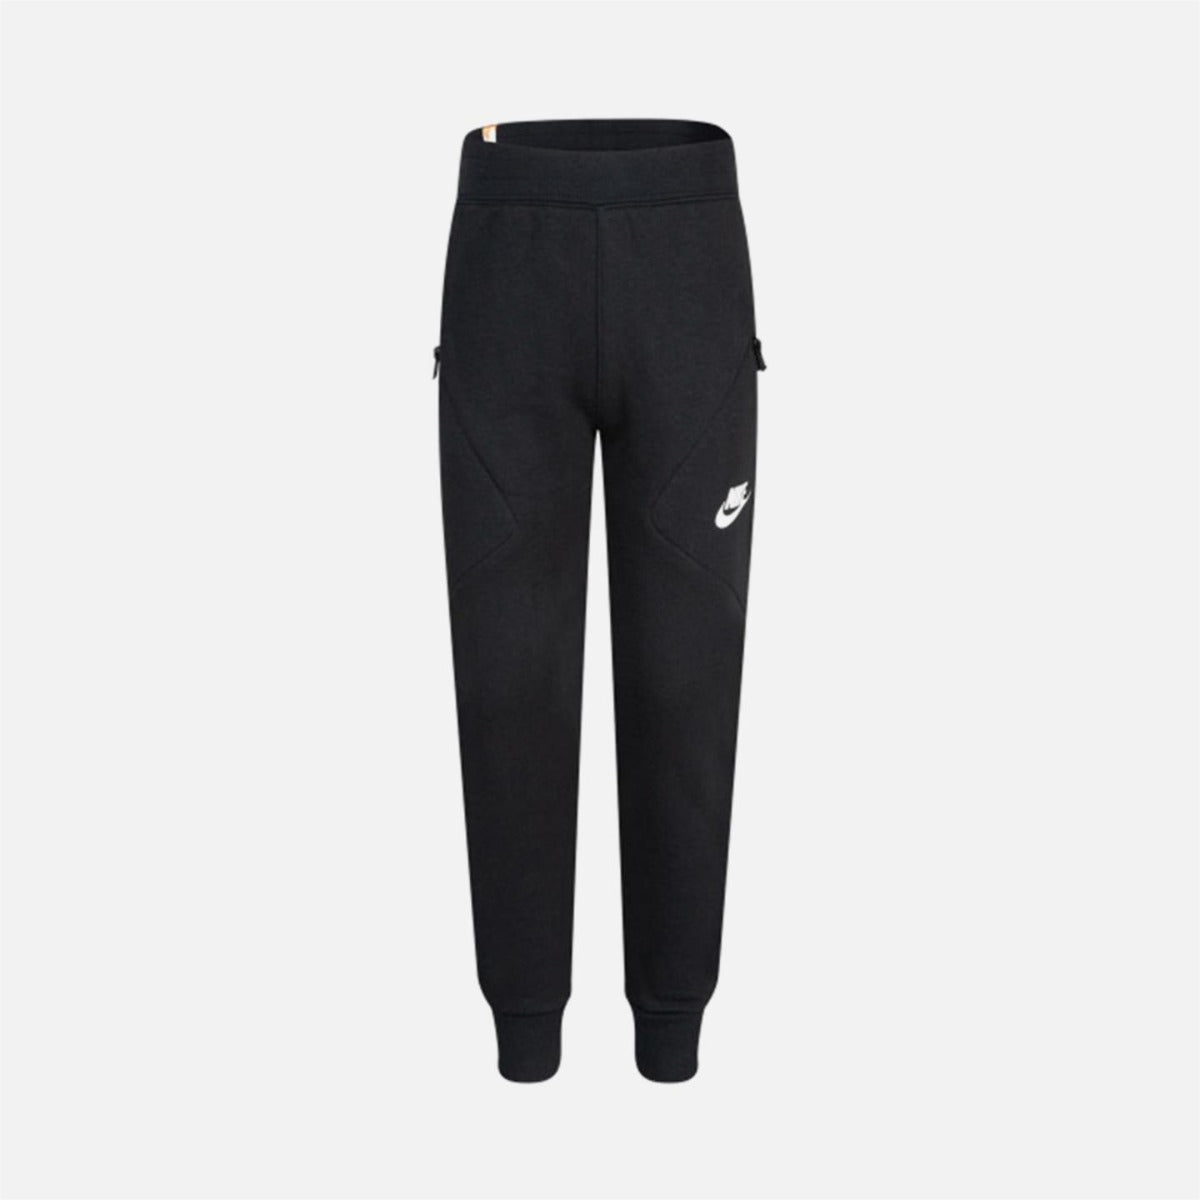 Pantalon Nike Sportswear Enfant - Noir